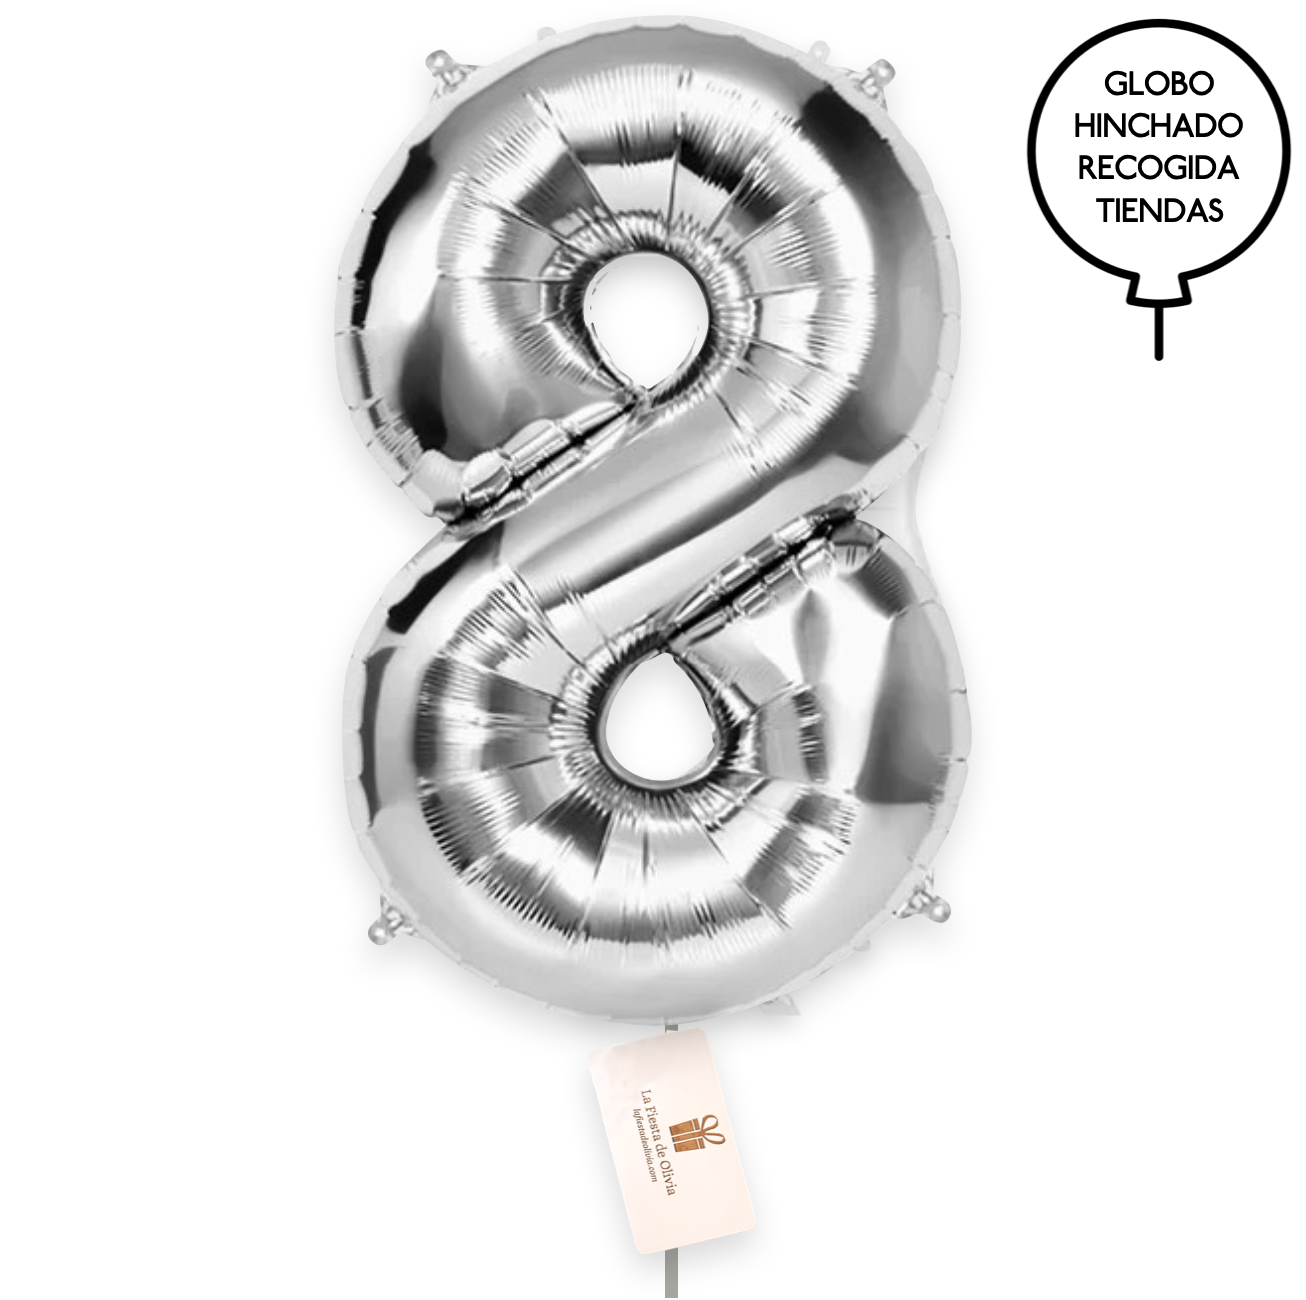 Balões de prata insuflados com hélio XL <br>(apenas Barcelona e Madrid)